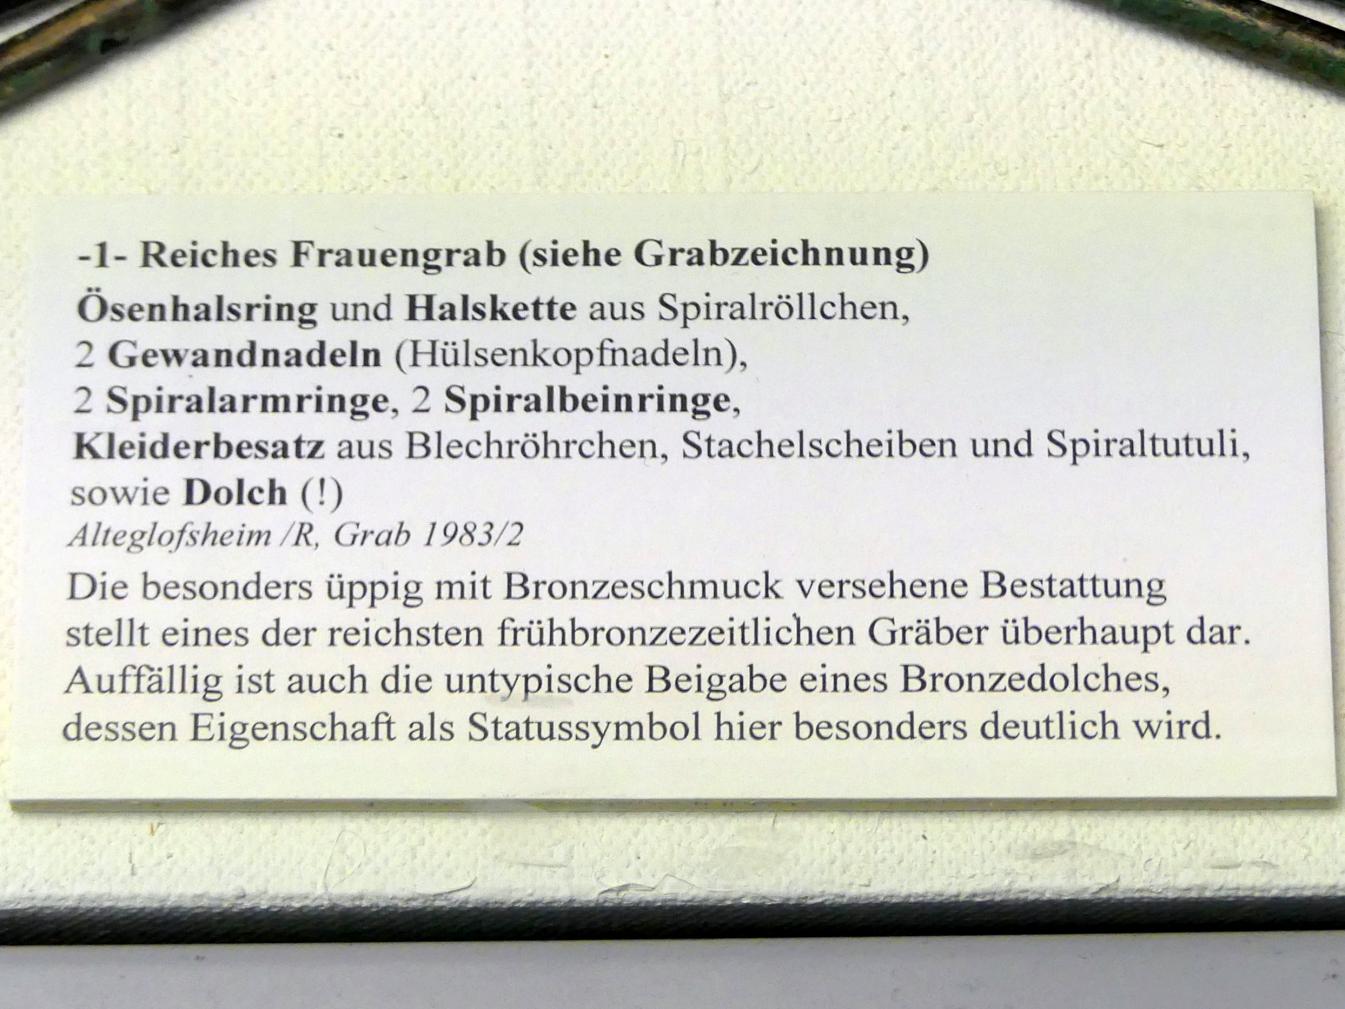 Kleiderbesatz aus Blechröhrchen, Frühe Bronzezeit, 3365 - 1200 v. Chr., Bild 2/2